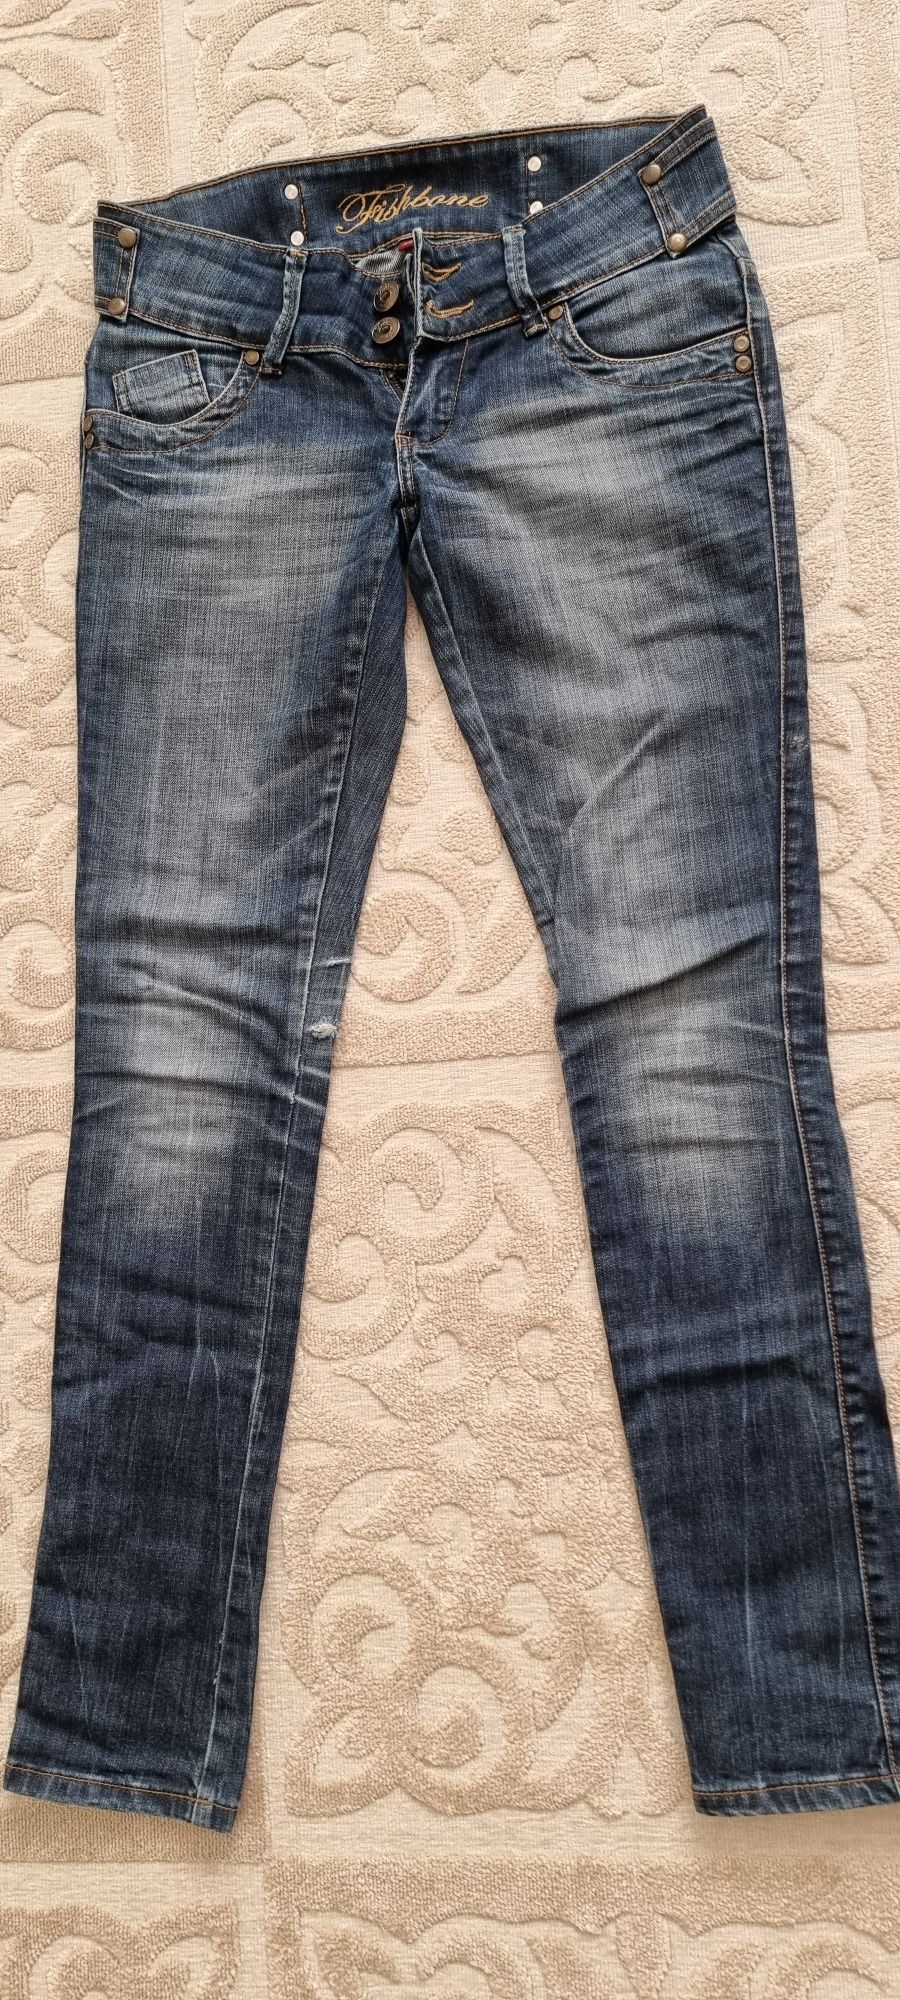 Продам джинсы 2 пары размер 27